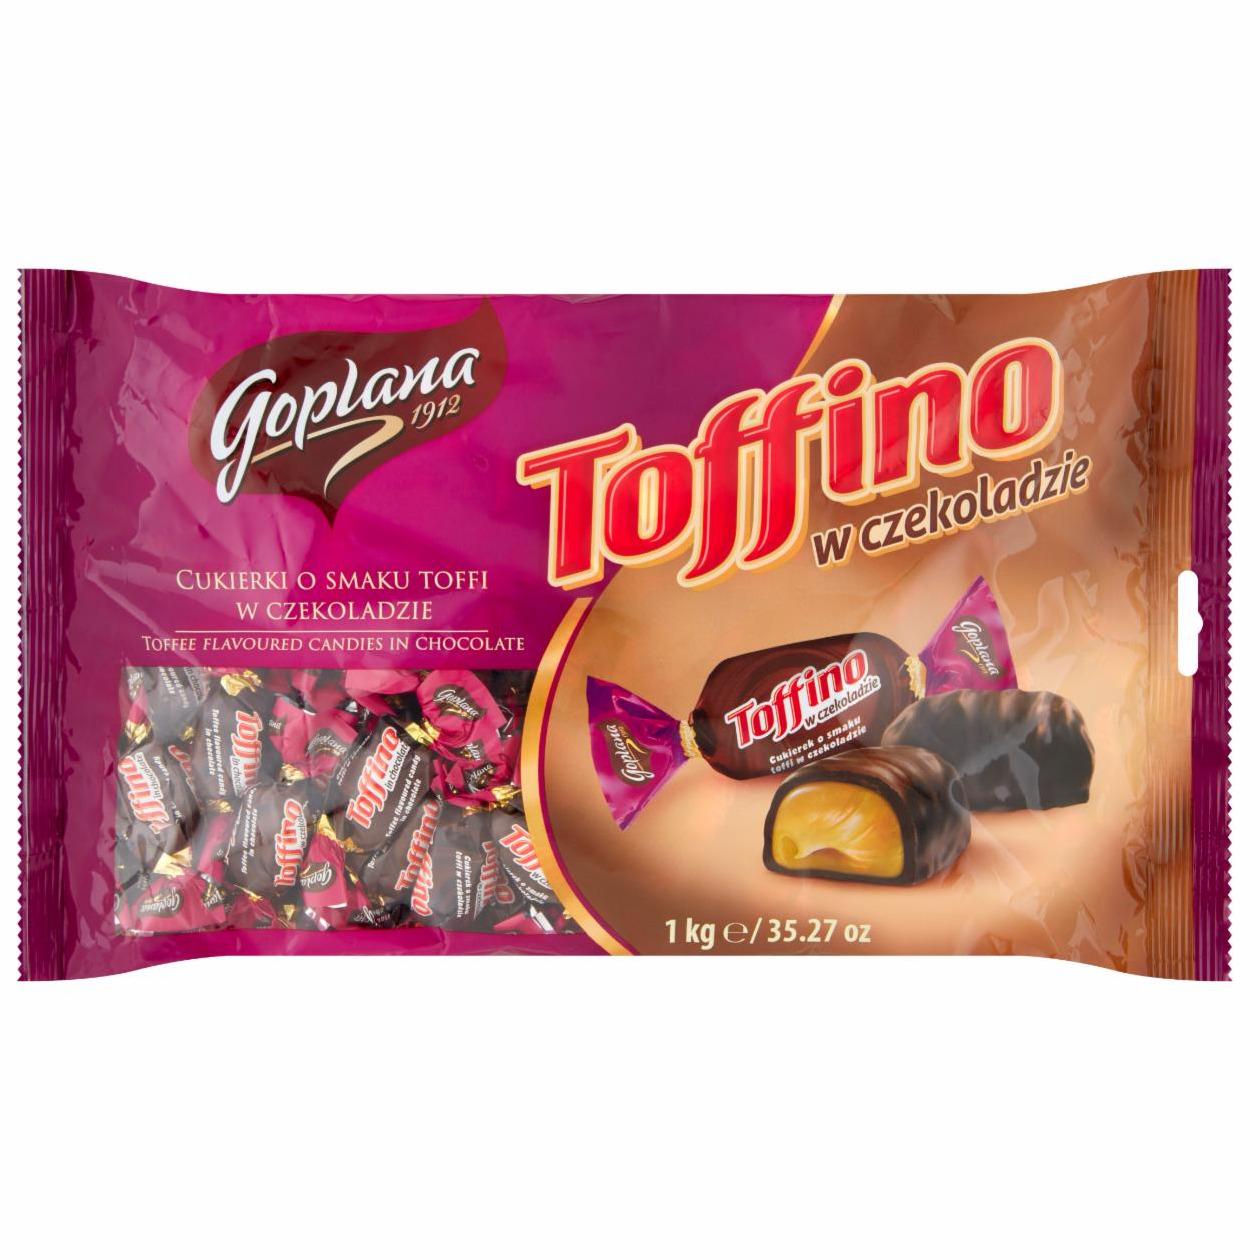 Zdjęcia - Toffino Cukierki o smaku toffi w czekoladzie Goplana